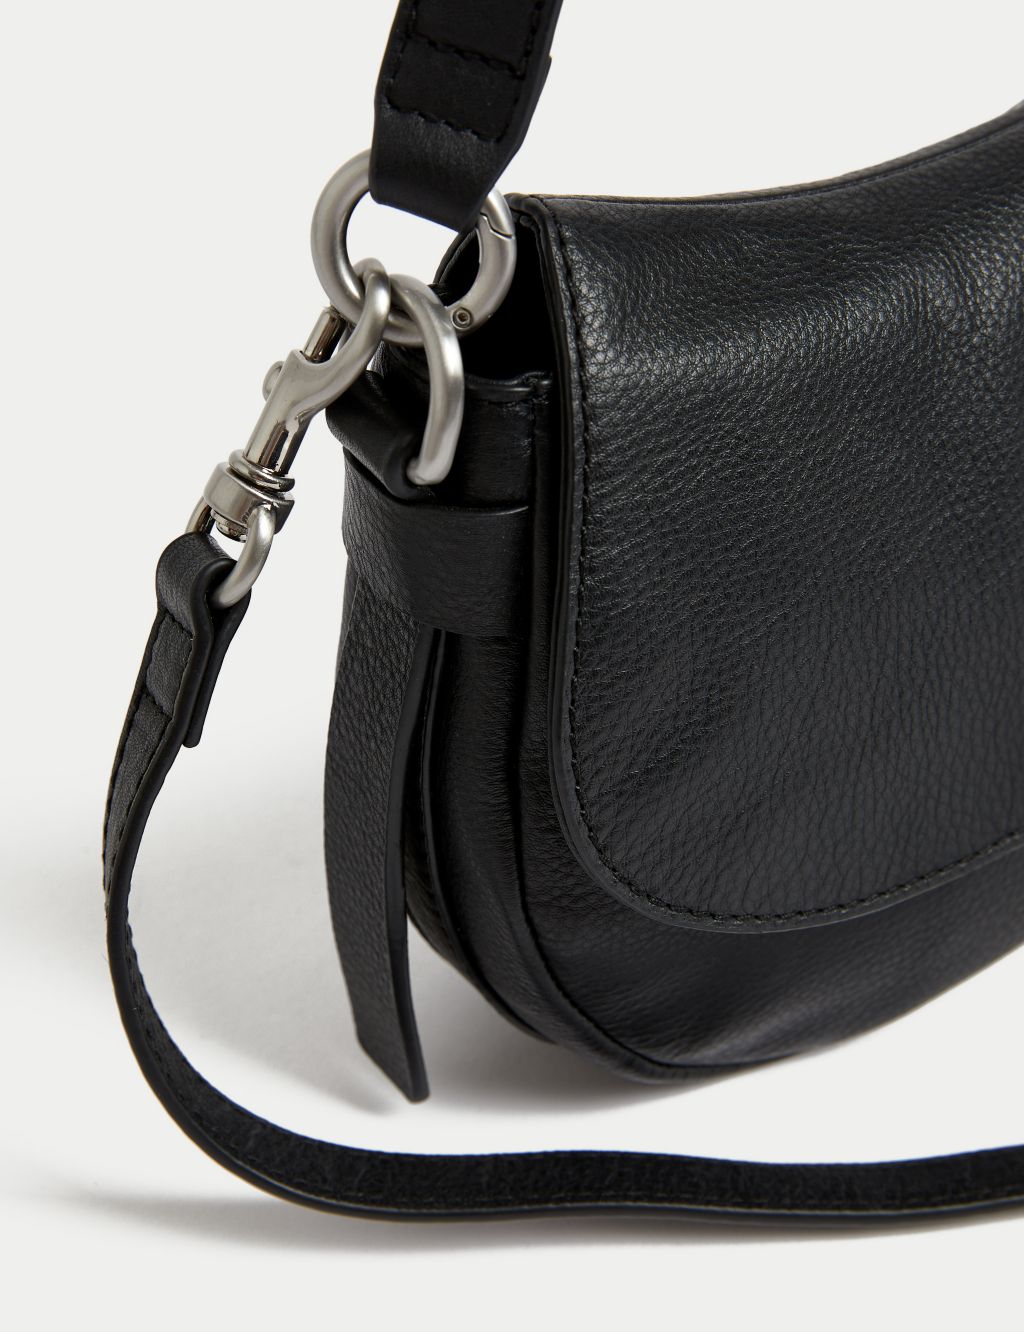 Leather Shoulder Bag image 2